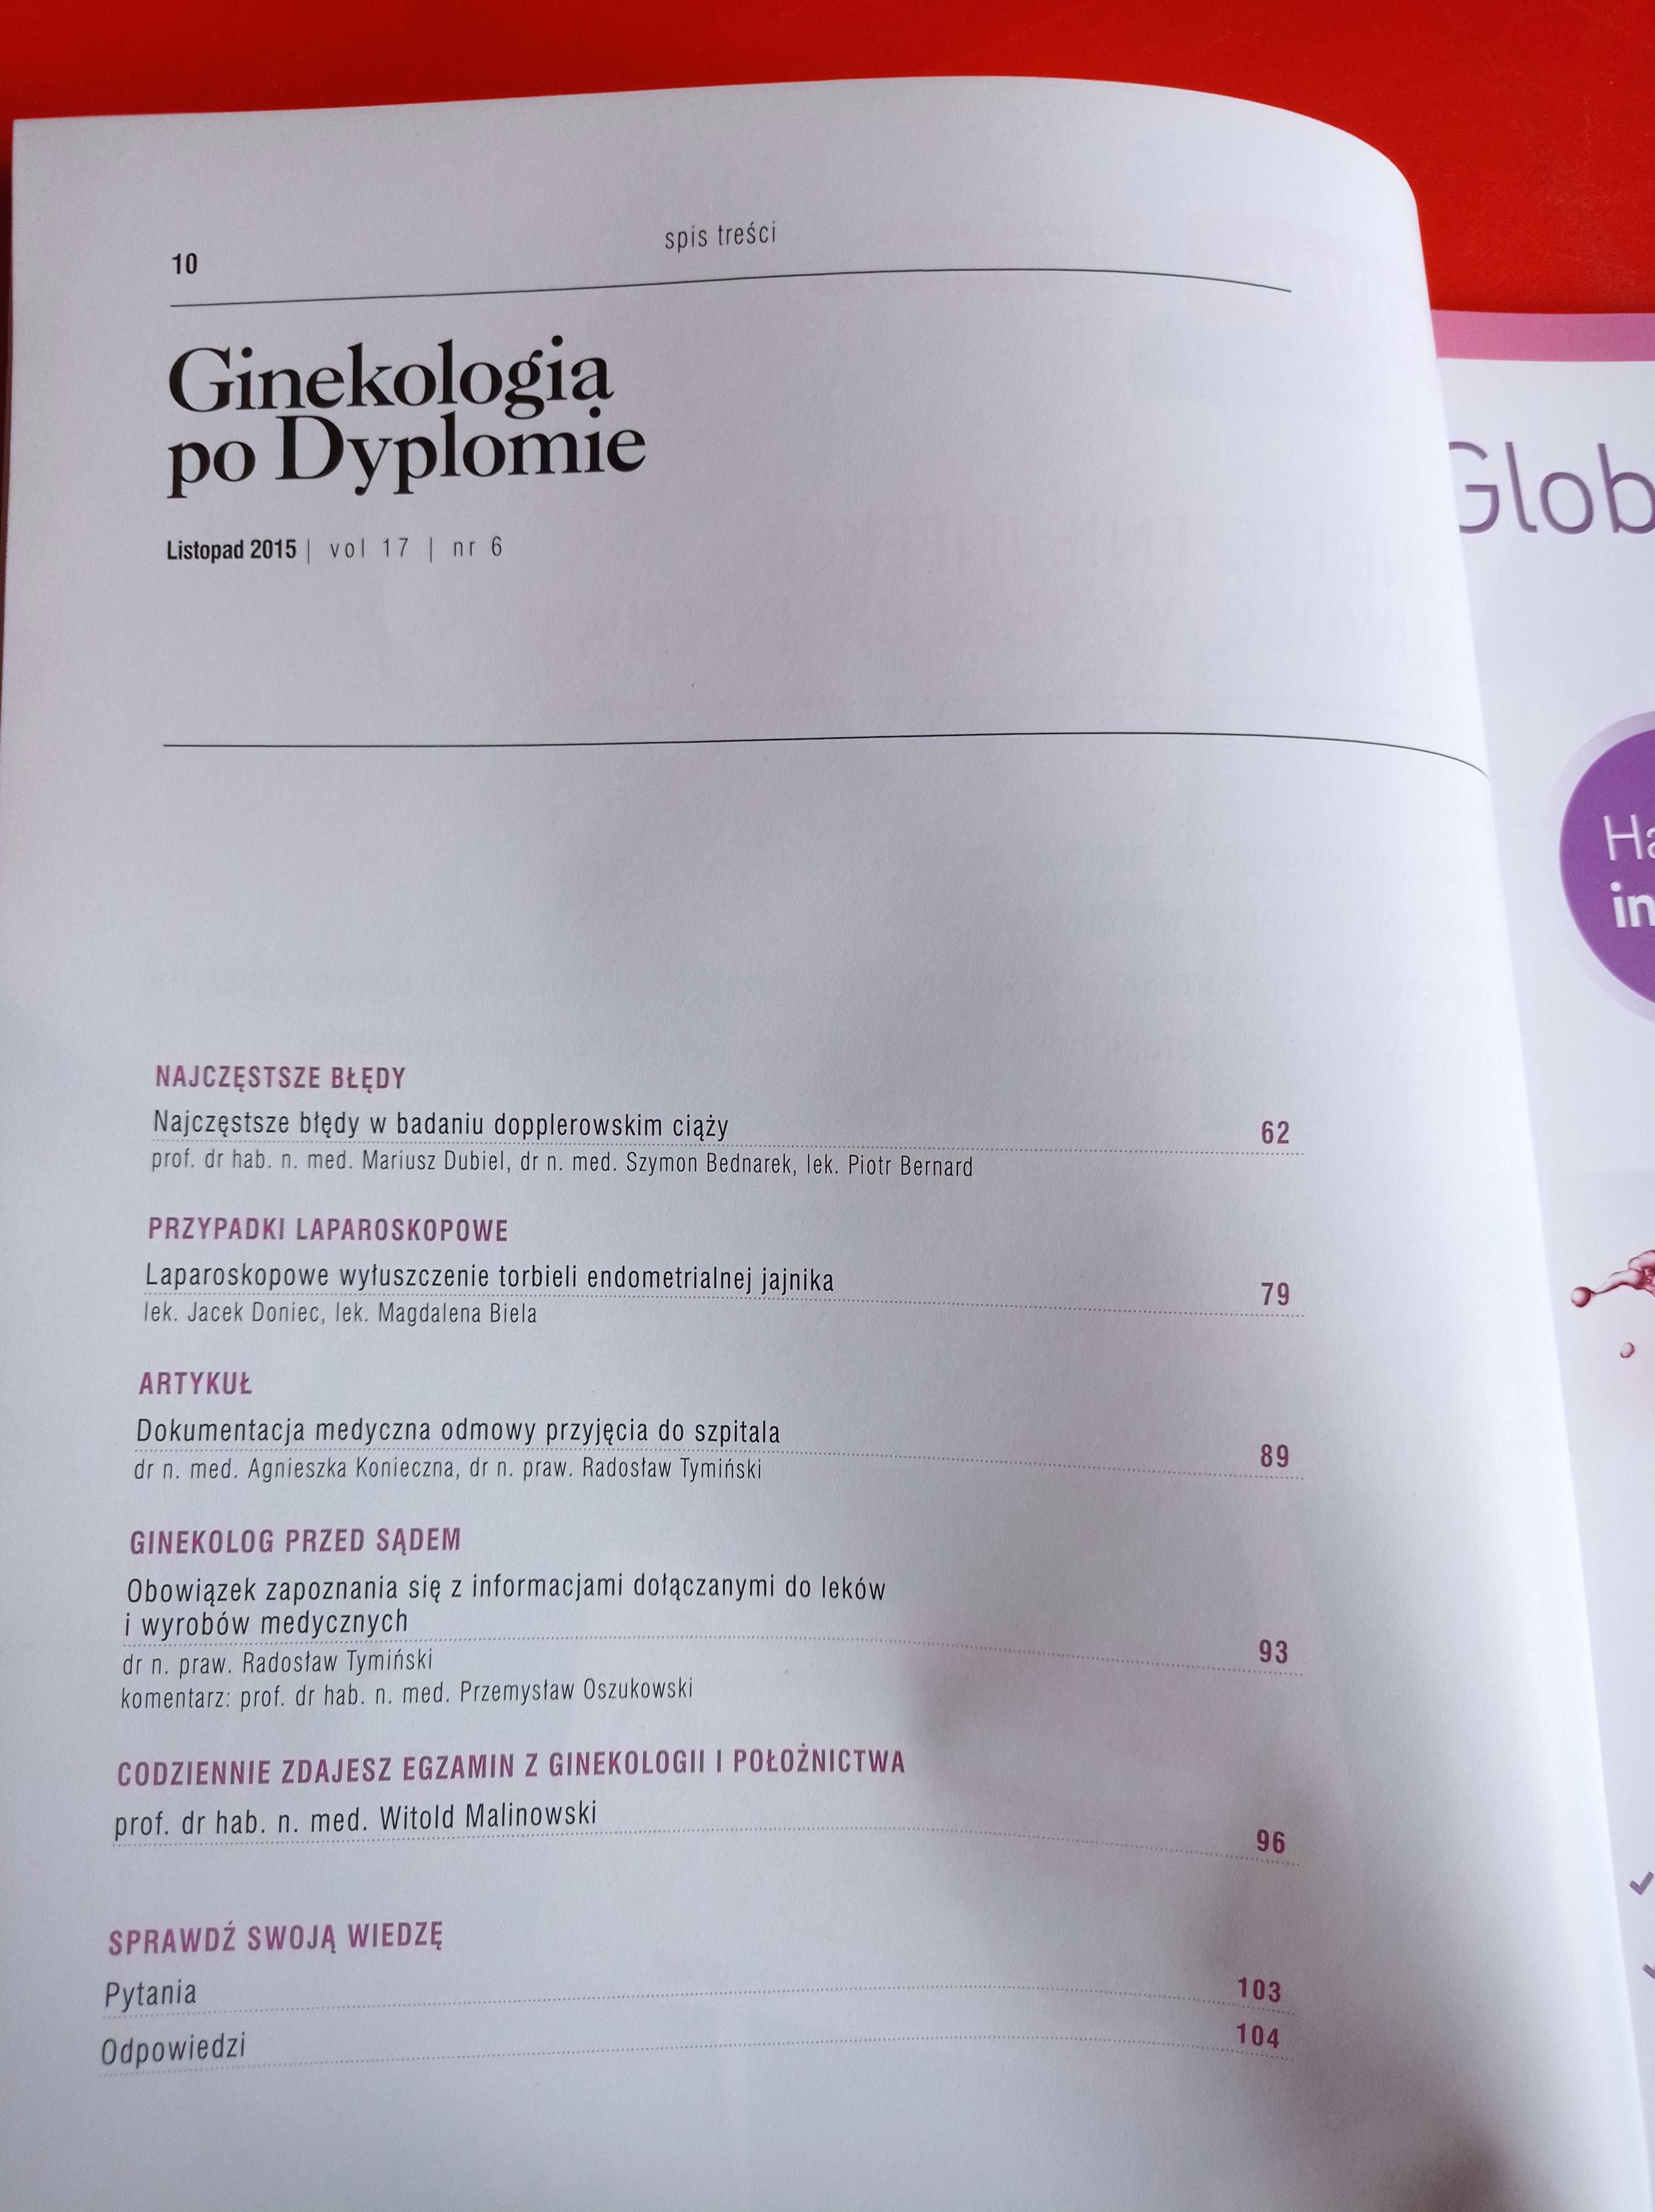 Ginekologia po dyplomie, nr 6, tom 17, listopad 2015